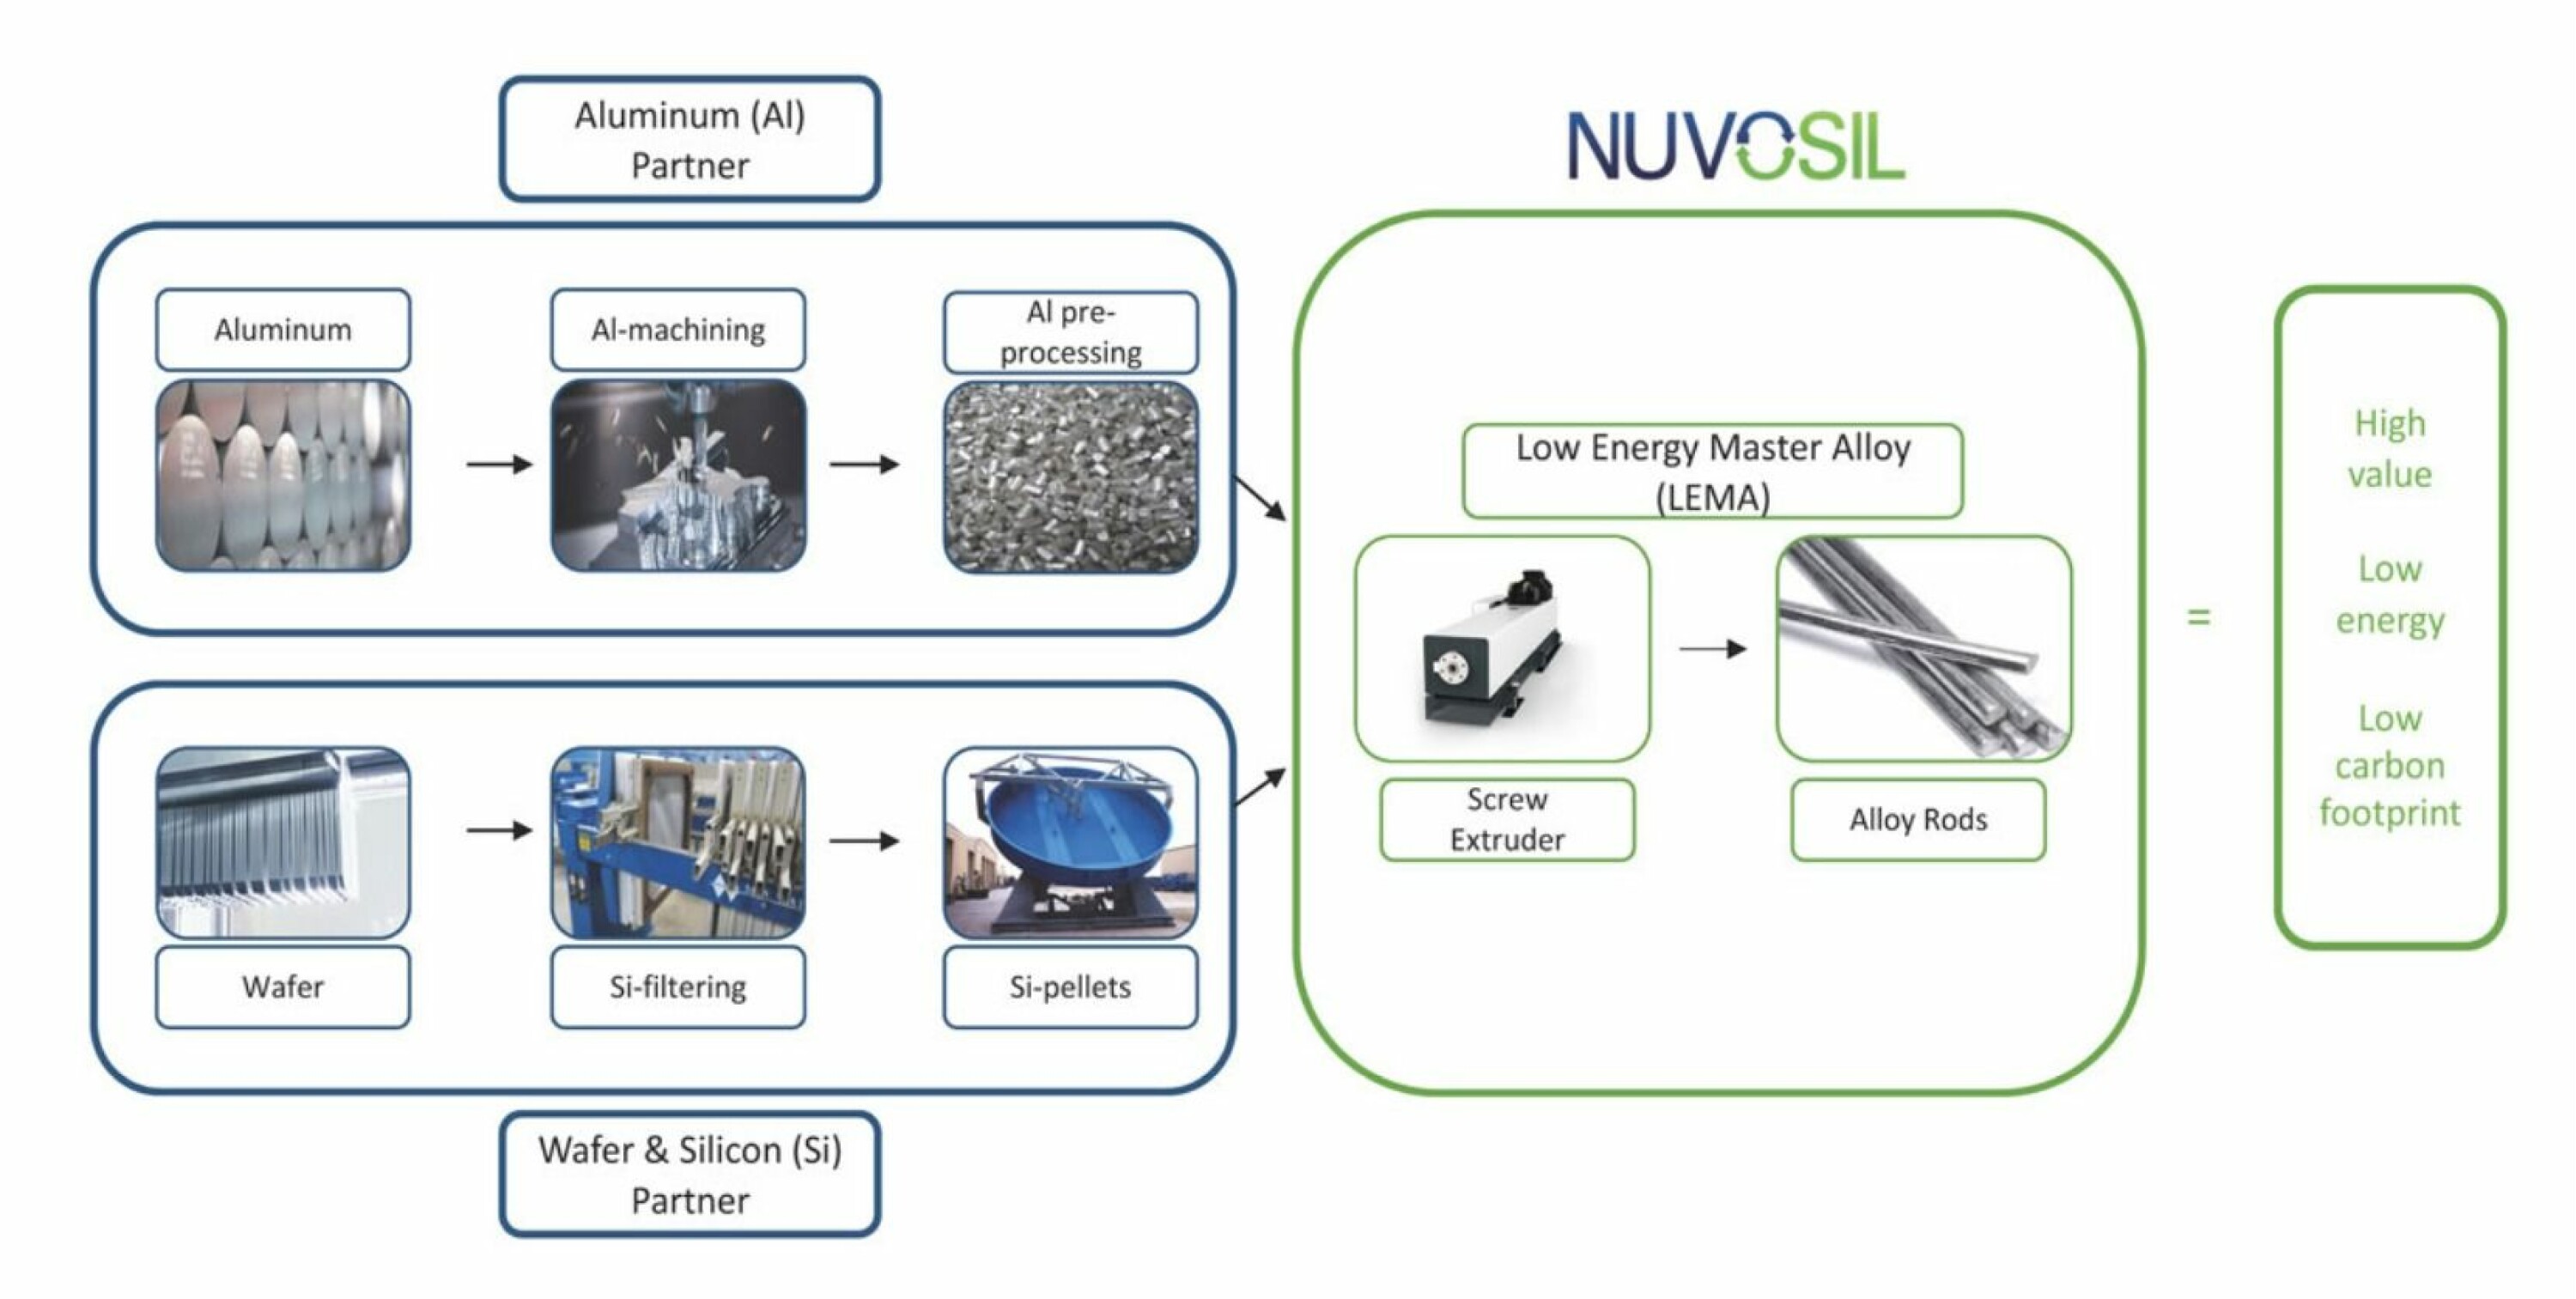 Dette er verdikjeden for Nuvosil-prosessen. Den gir høy effektivitet med lavt energiforbruk. Teknologien ble opprinnelig utviklet for bruk på forskjellige resirkulerbare aluminiumsmaterialer.